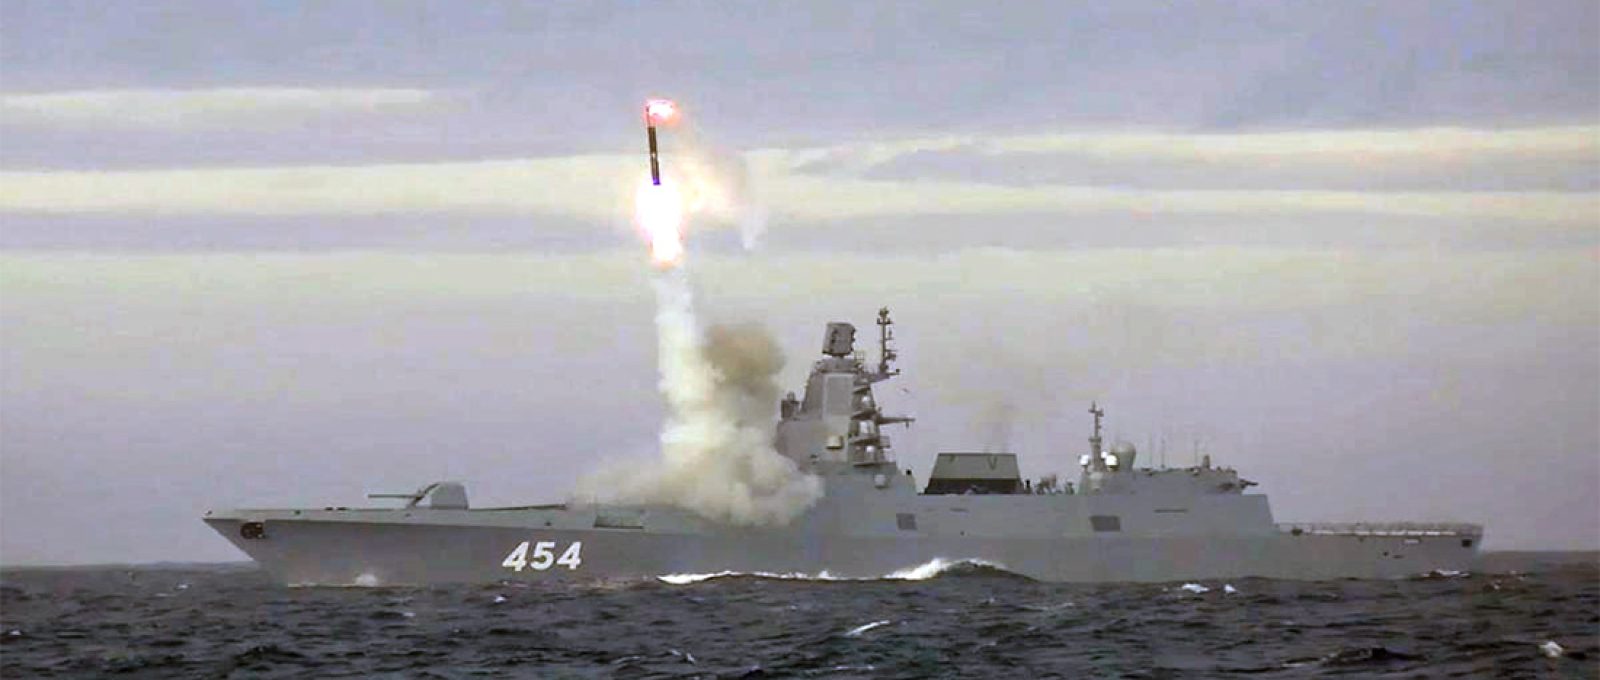 A fragata Almirante Gorshkov, da Marinha russa, lança um míssil de cruzeiro hipersônico Zircon durante um teste no Mar de Barents (Reuters).